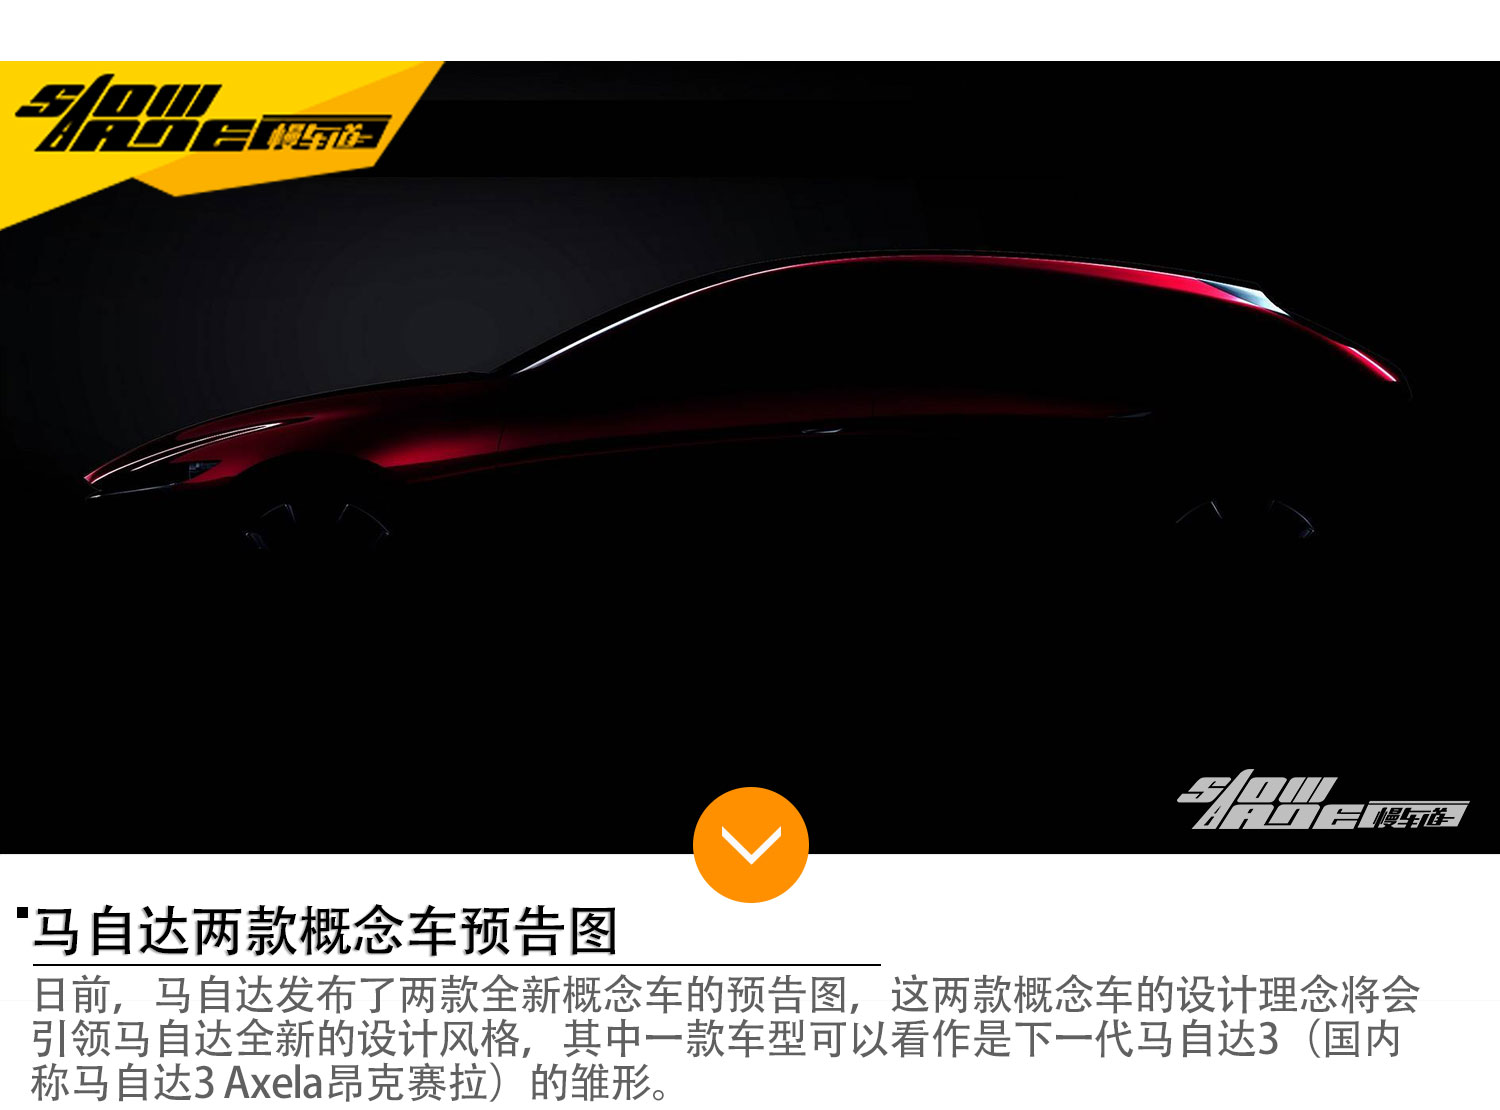 马自达两款概念车预告图 将亮相东京车展